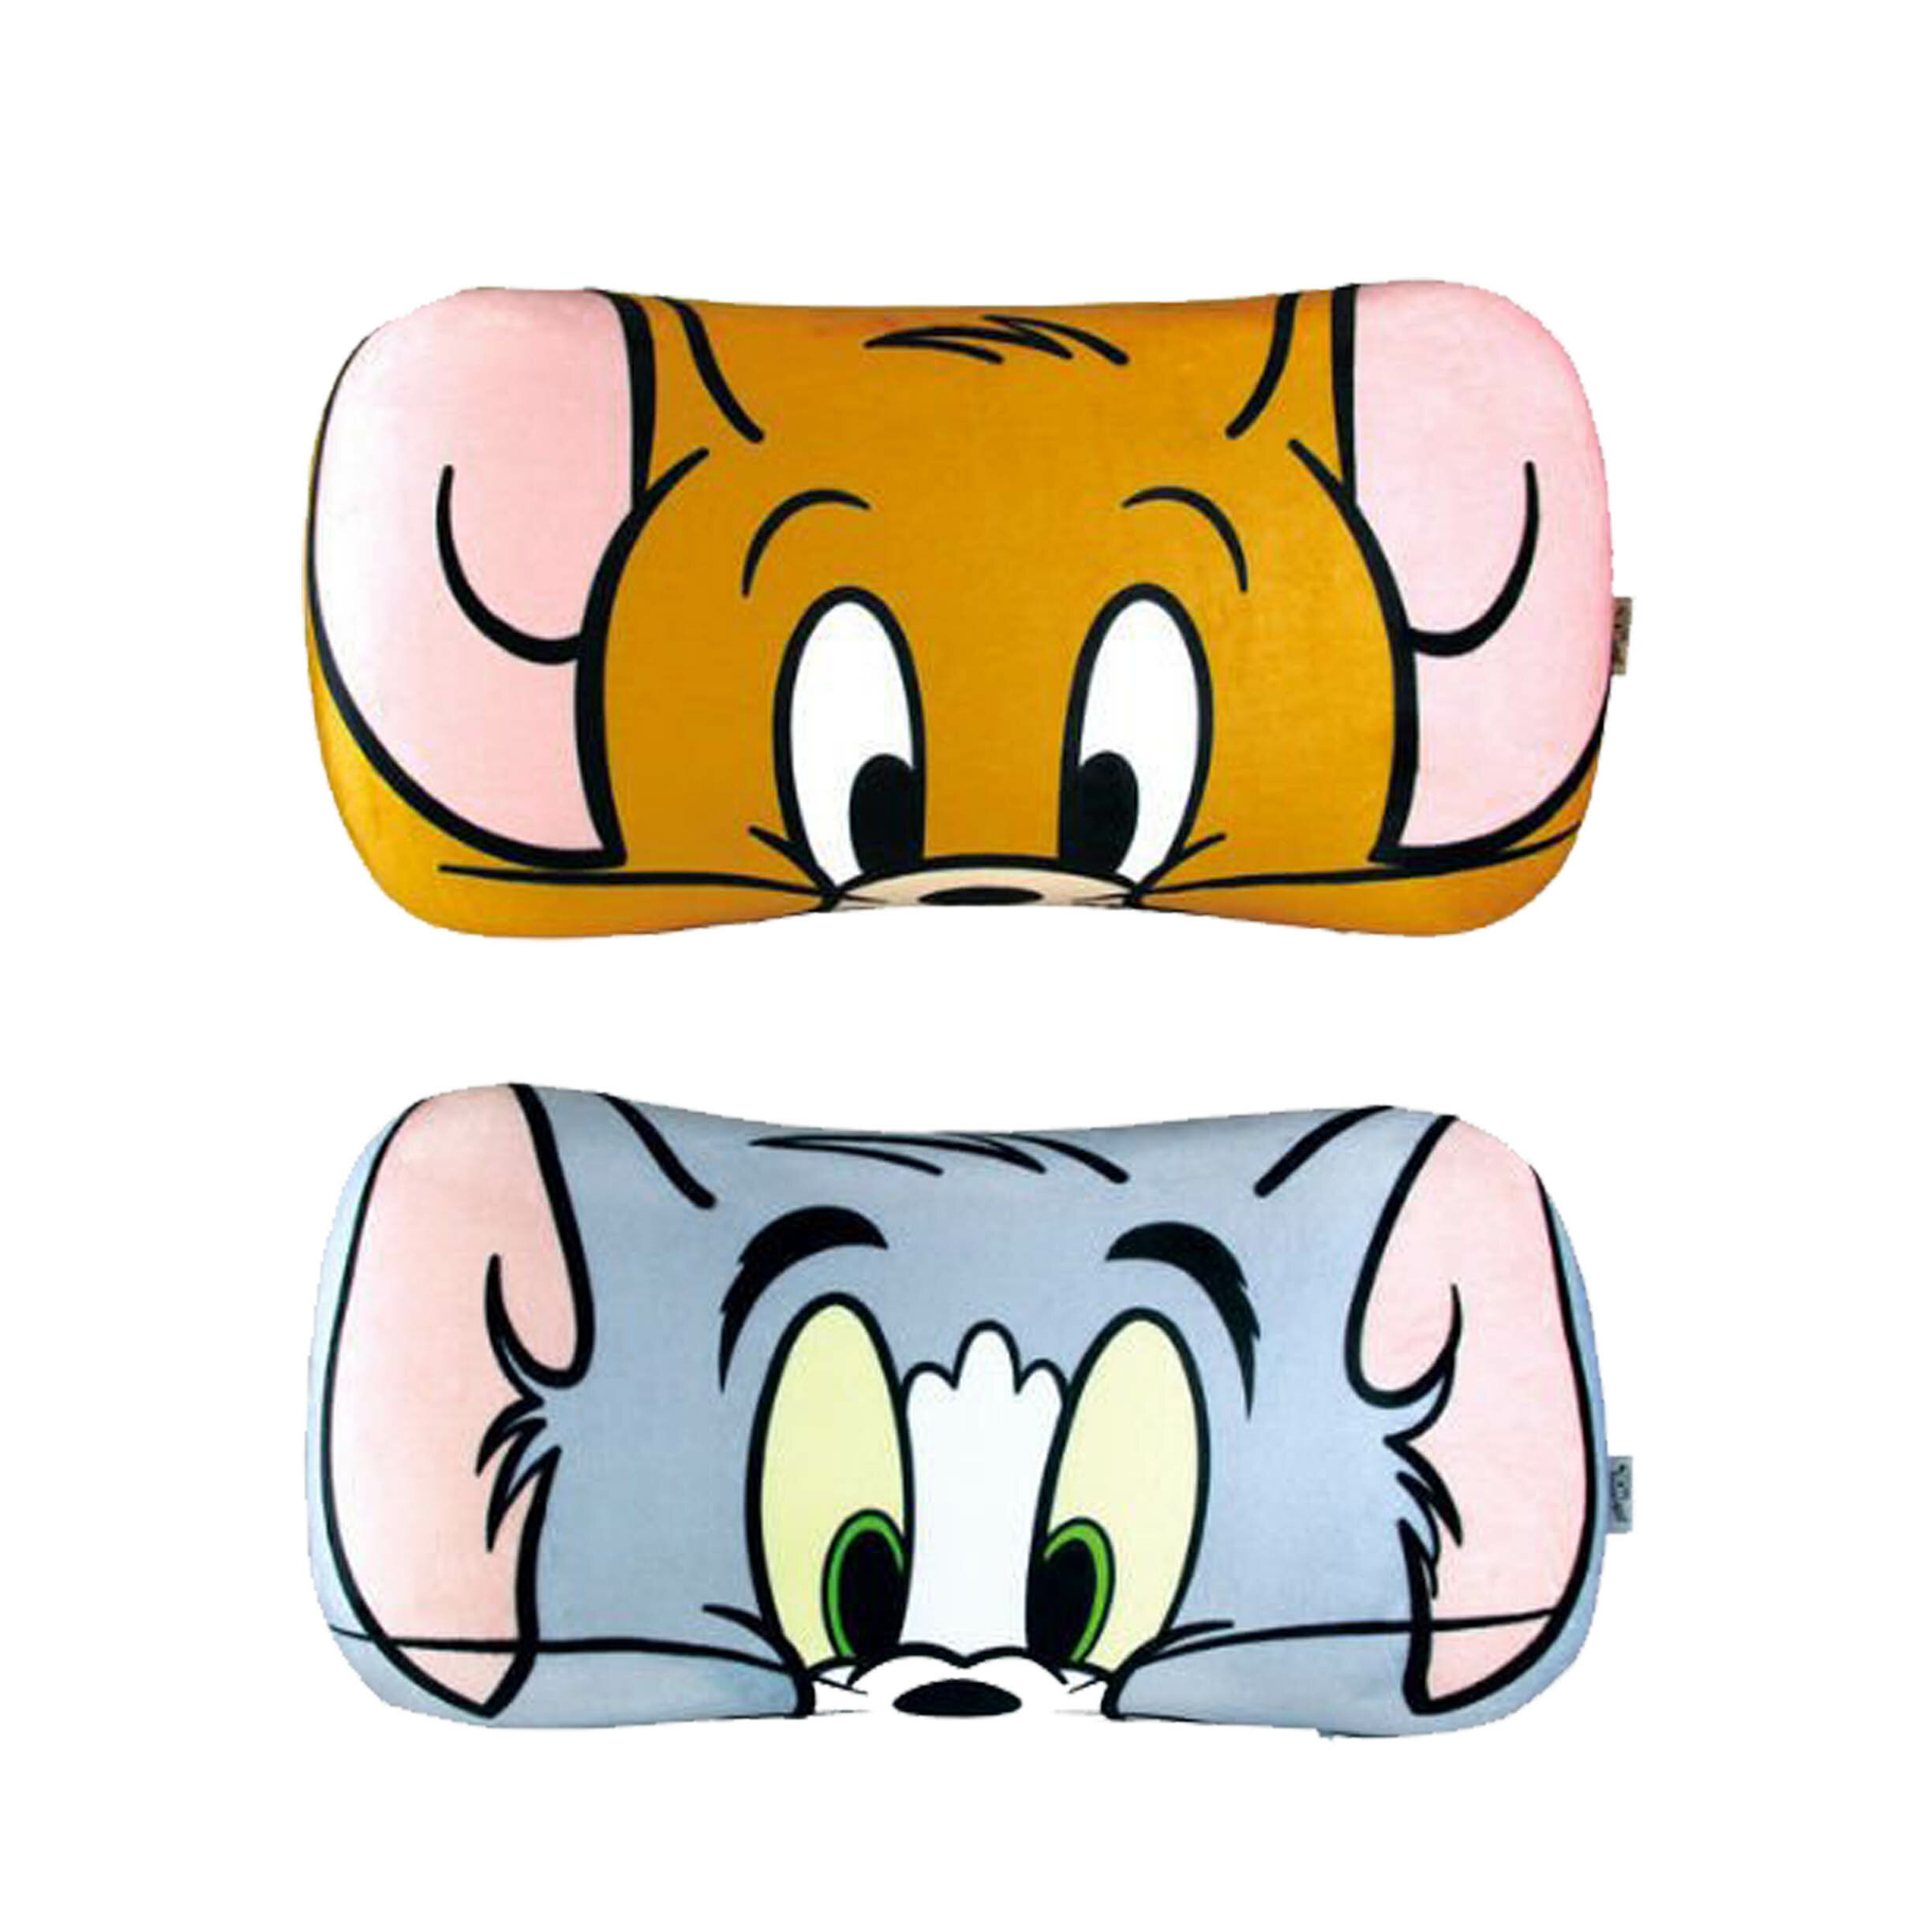 靠枕-湯姆貓與傑利鼠 Tom and Jerry 日本進口正版授權